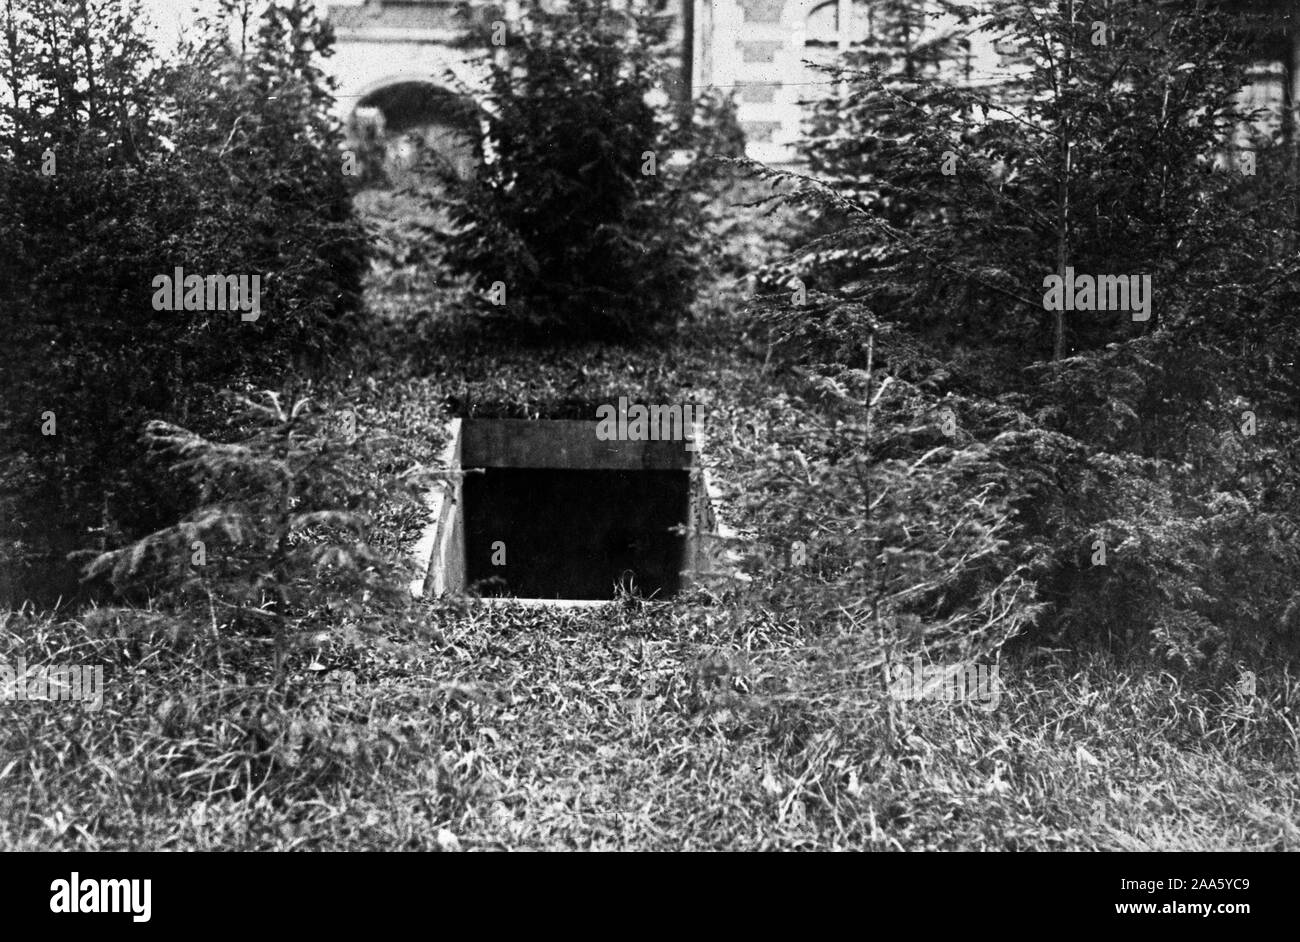 Entrée du souterrain menant de l'ex-Kaiser's Castle à Spa d'un point quelques milles dans les bois. L'ancien dirigeant de l'Allemagne ont fui à travers ce passage après avoir signé son abdication dans le château. Banque D'Images